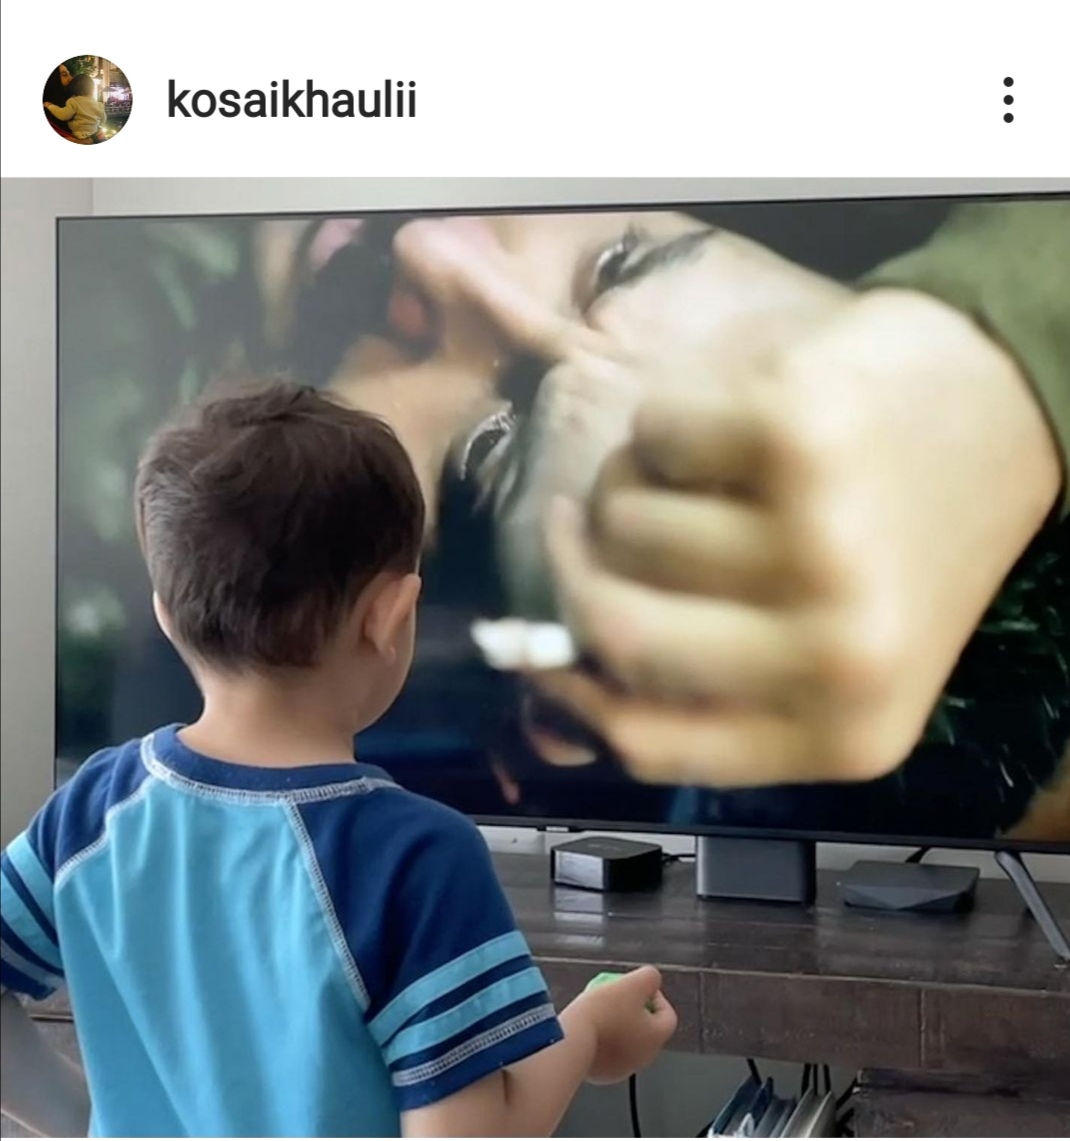 العميد ابن قصي خولي يقلد والده أمام شاشة التلفزيون. الصورة من حساب قصي خولي على إنستغرام